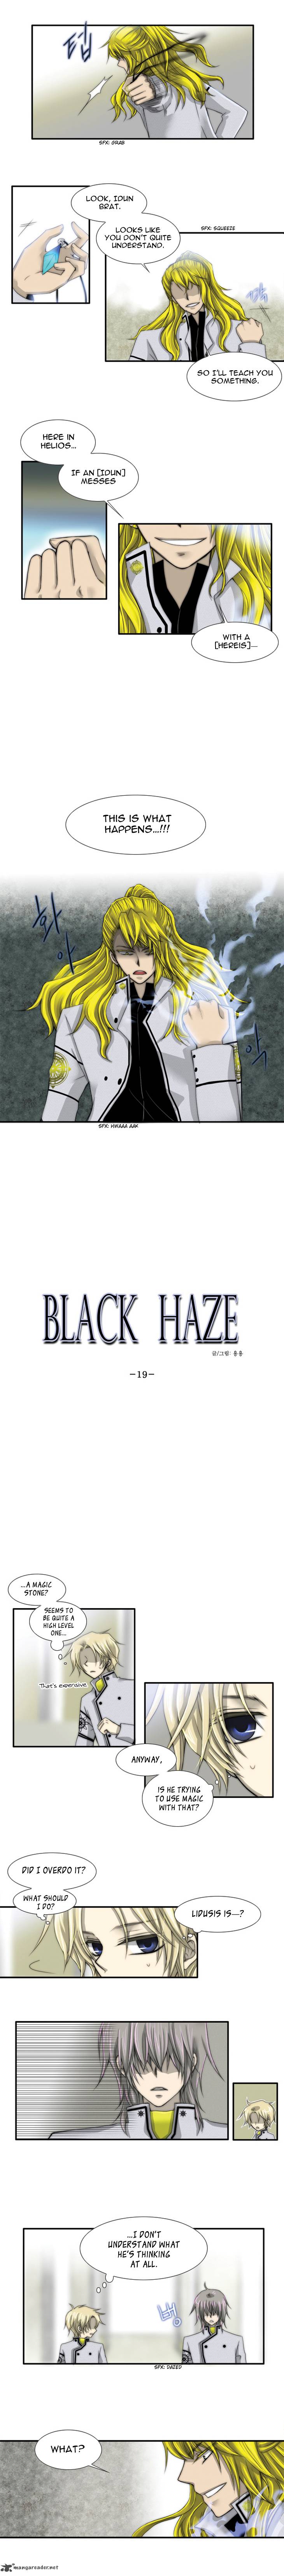 black_haze_19_2